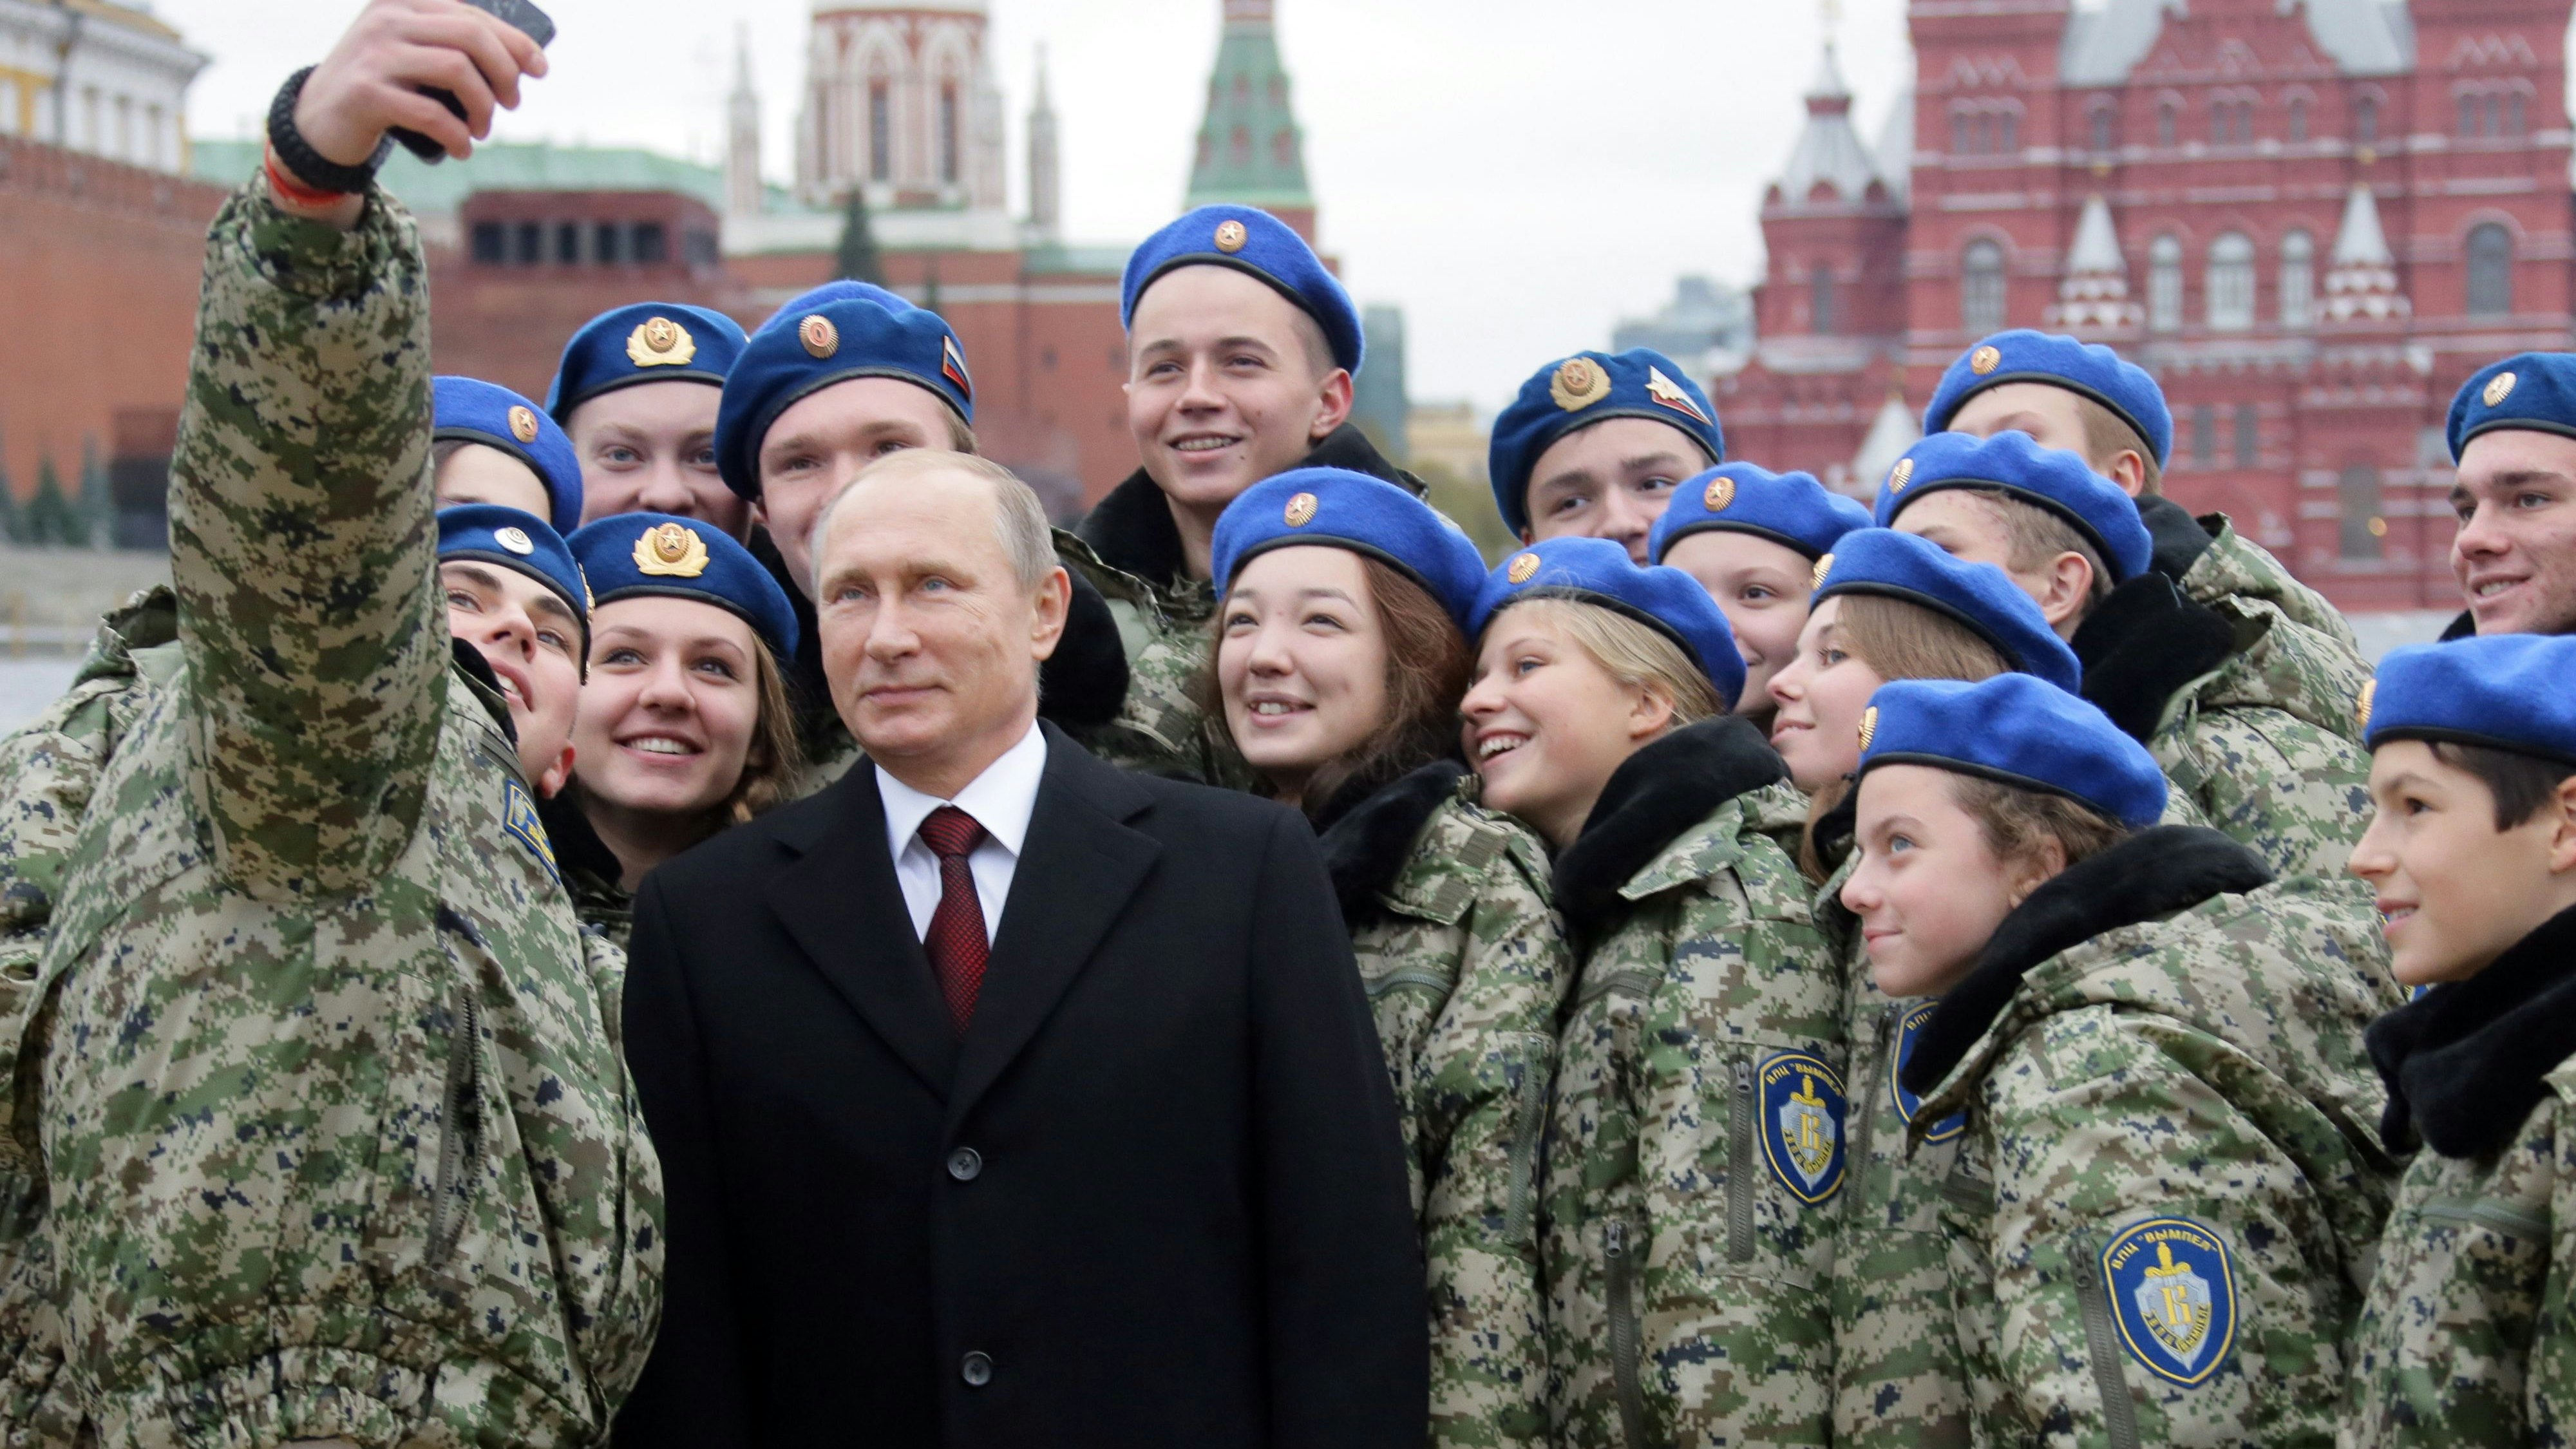 Kriegstreiber und Puschkin-Bewunderer: Russlands Präsident Wladimir Putin bei eine Selfie auf dem Roten Platz in Moskau